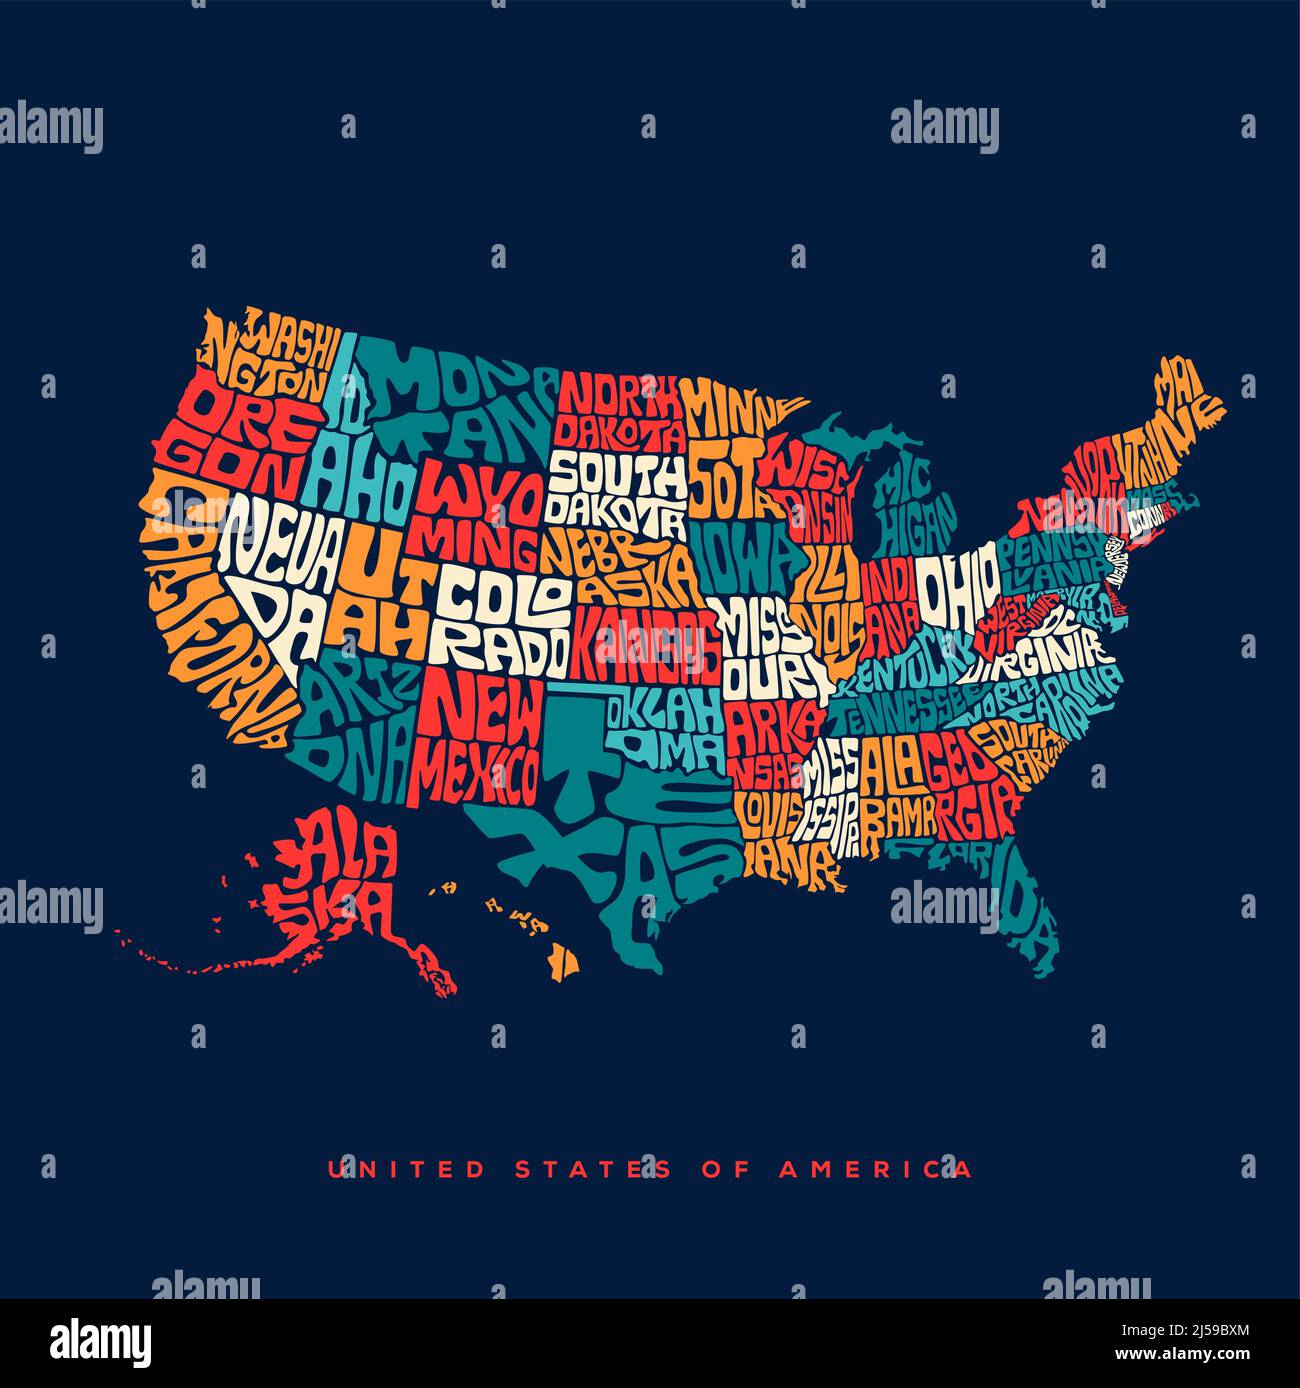 Typographie des cartes des États-Unis. Etats-Unis d'Amérique typographie cartographique Art. USA lettrage de la carte avec tous les noms d'Etats. Illustration de Vecteur